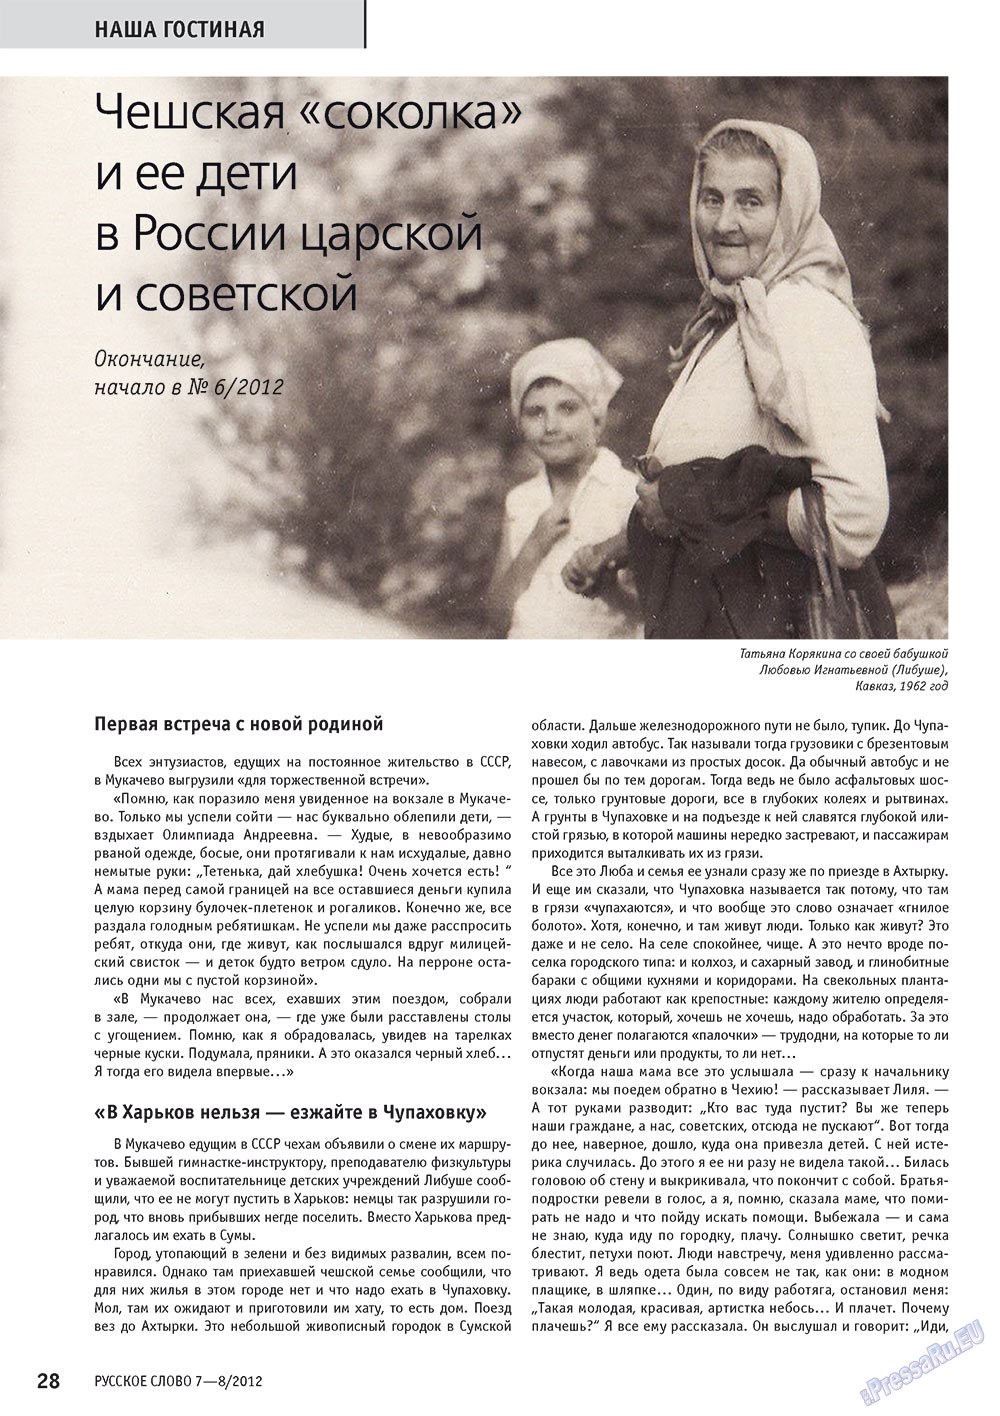 Русское слово, журнал. 2012 №7 стр.28